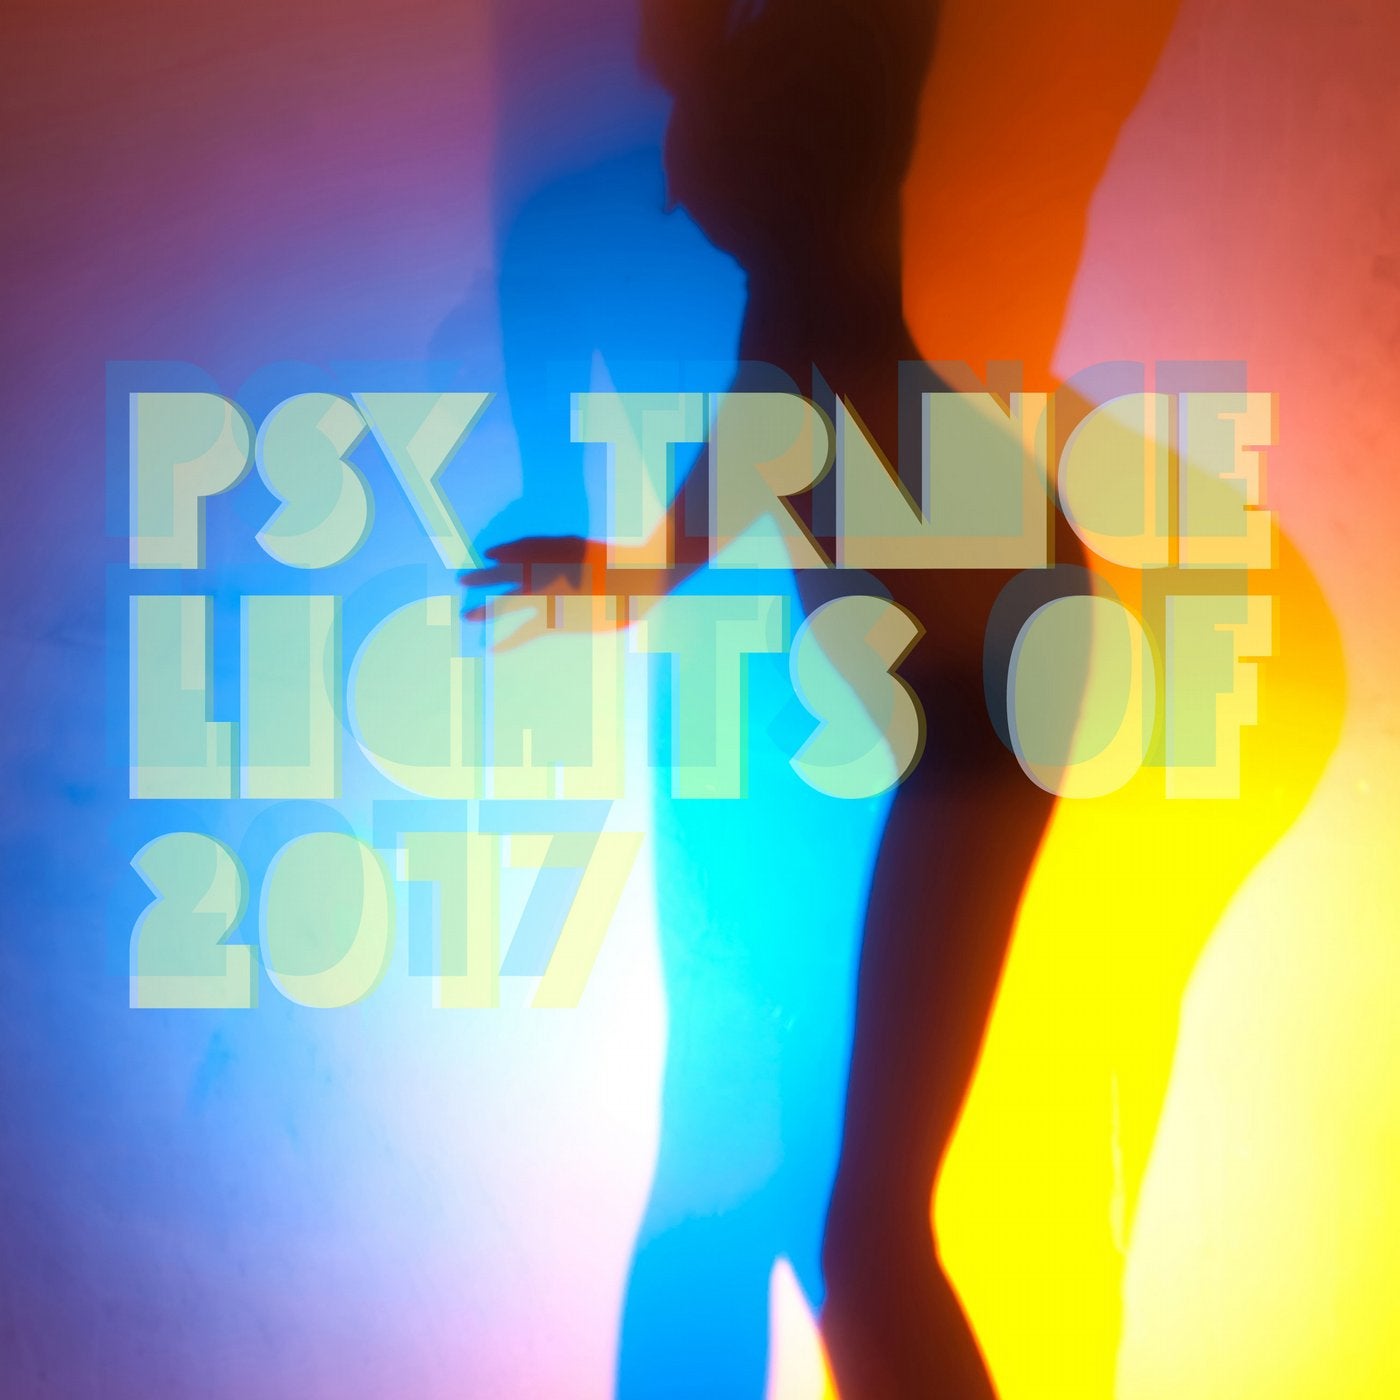 Psy Trance Lights of 2017